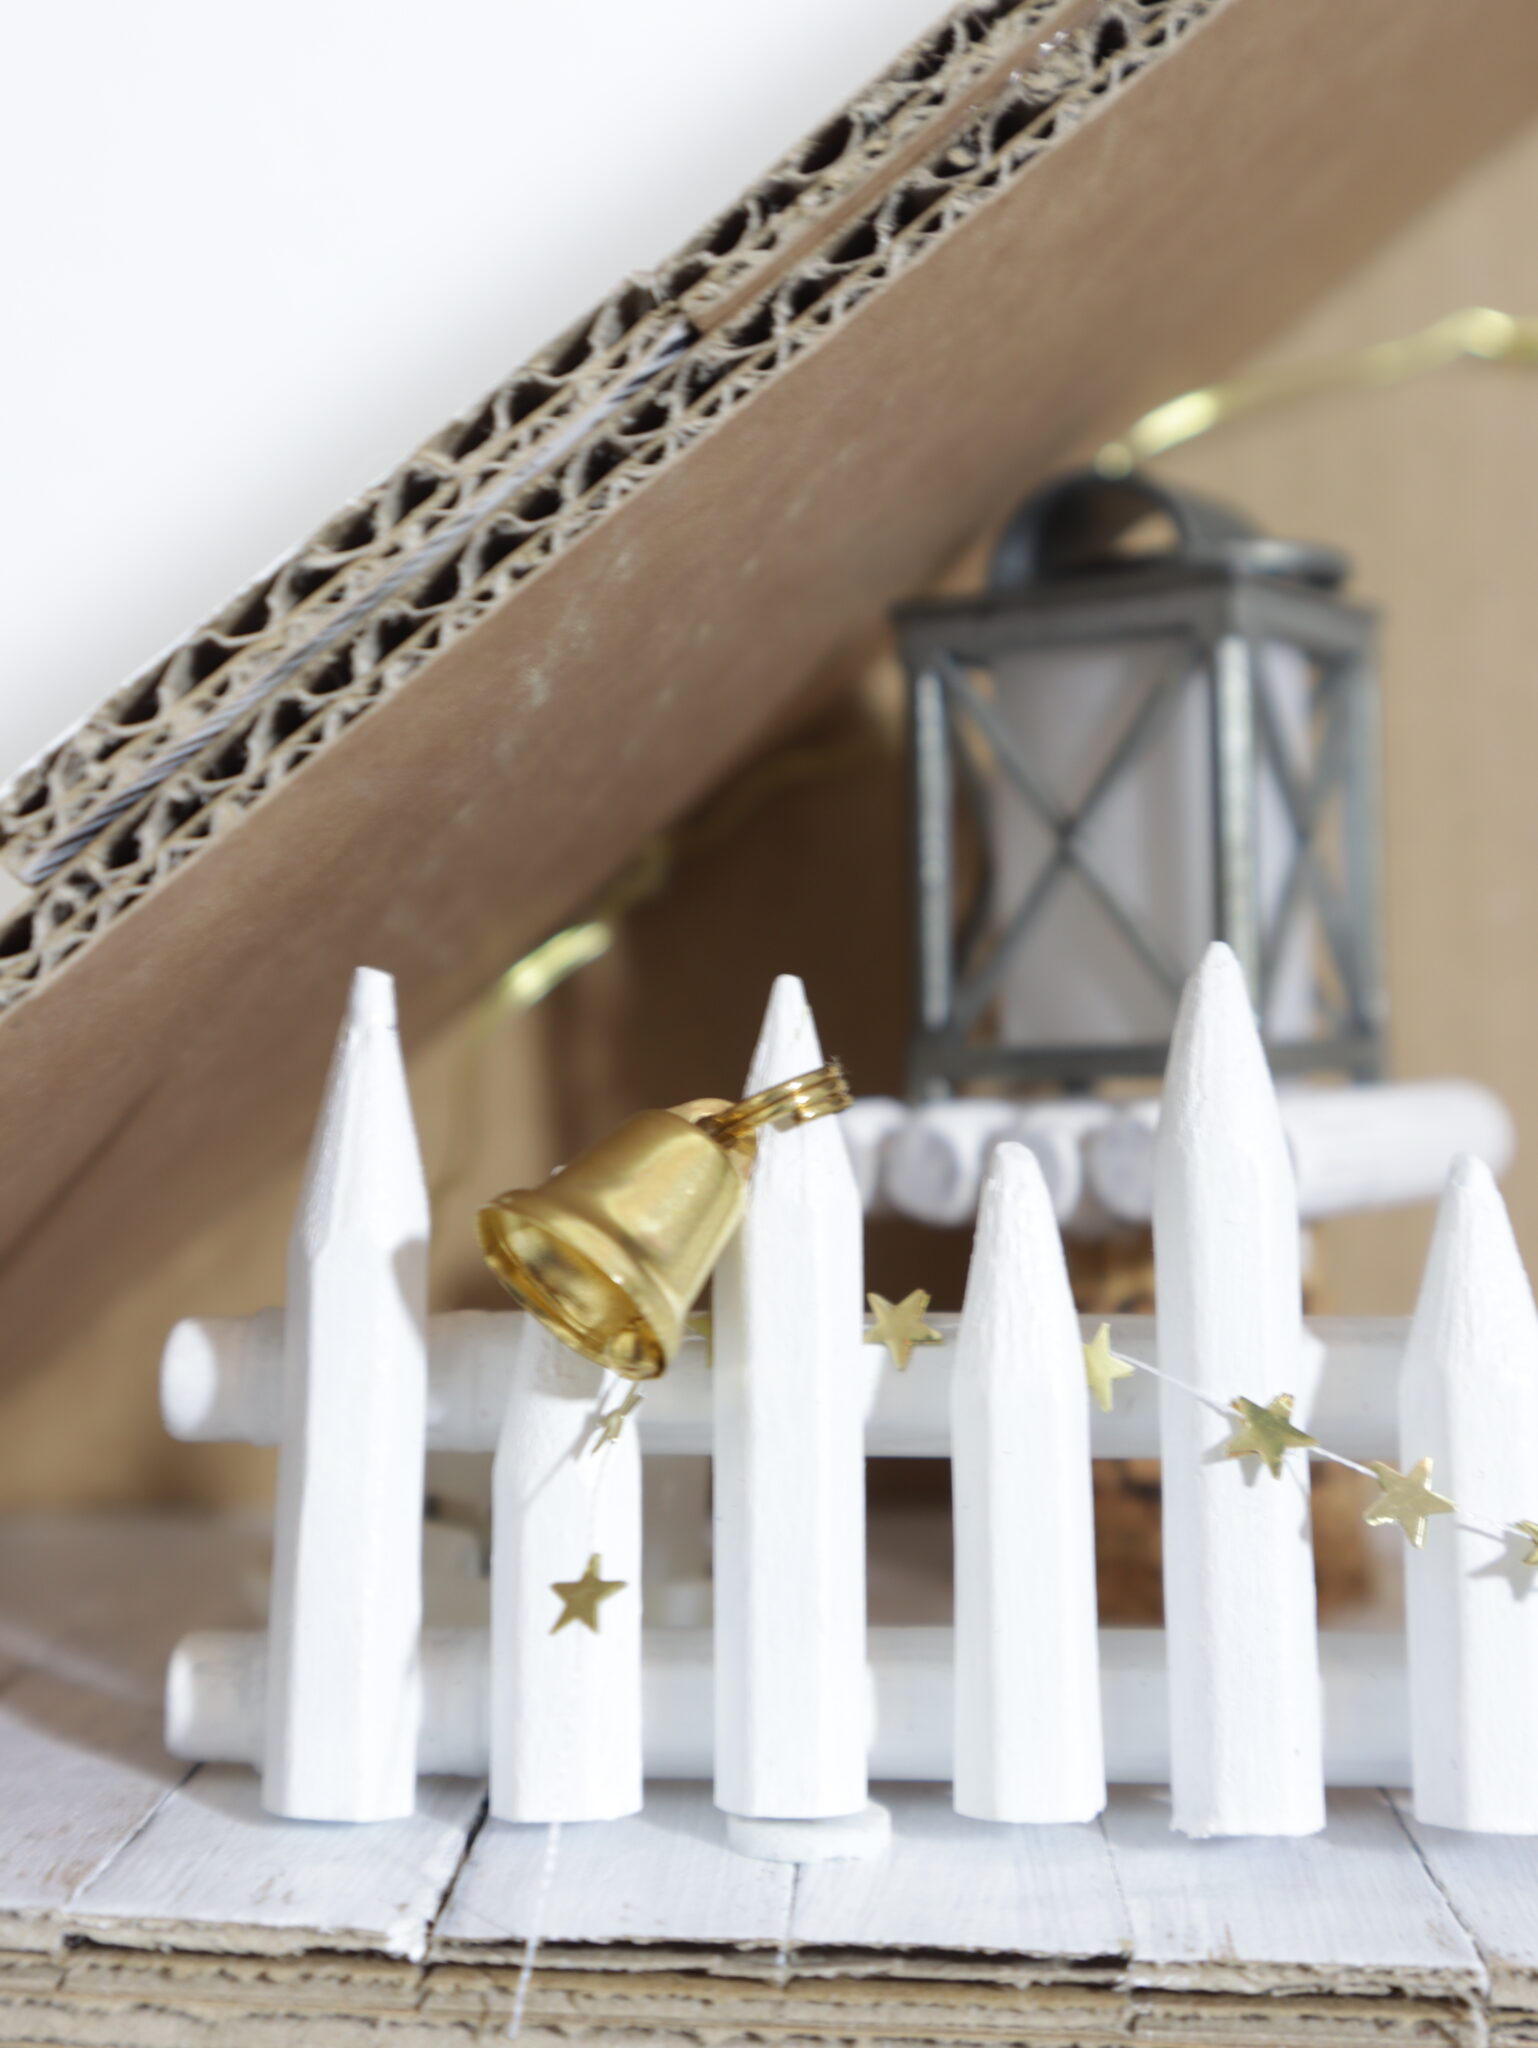 An der Brüstung aus Buntstiftresten hängt eine goldene Glocke sowie eine Girlande aus goldenen Sternen.